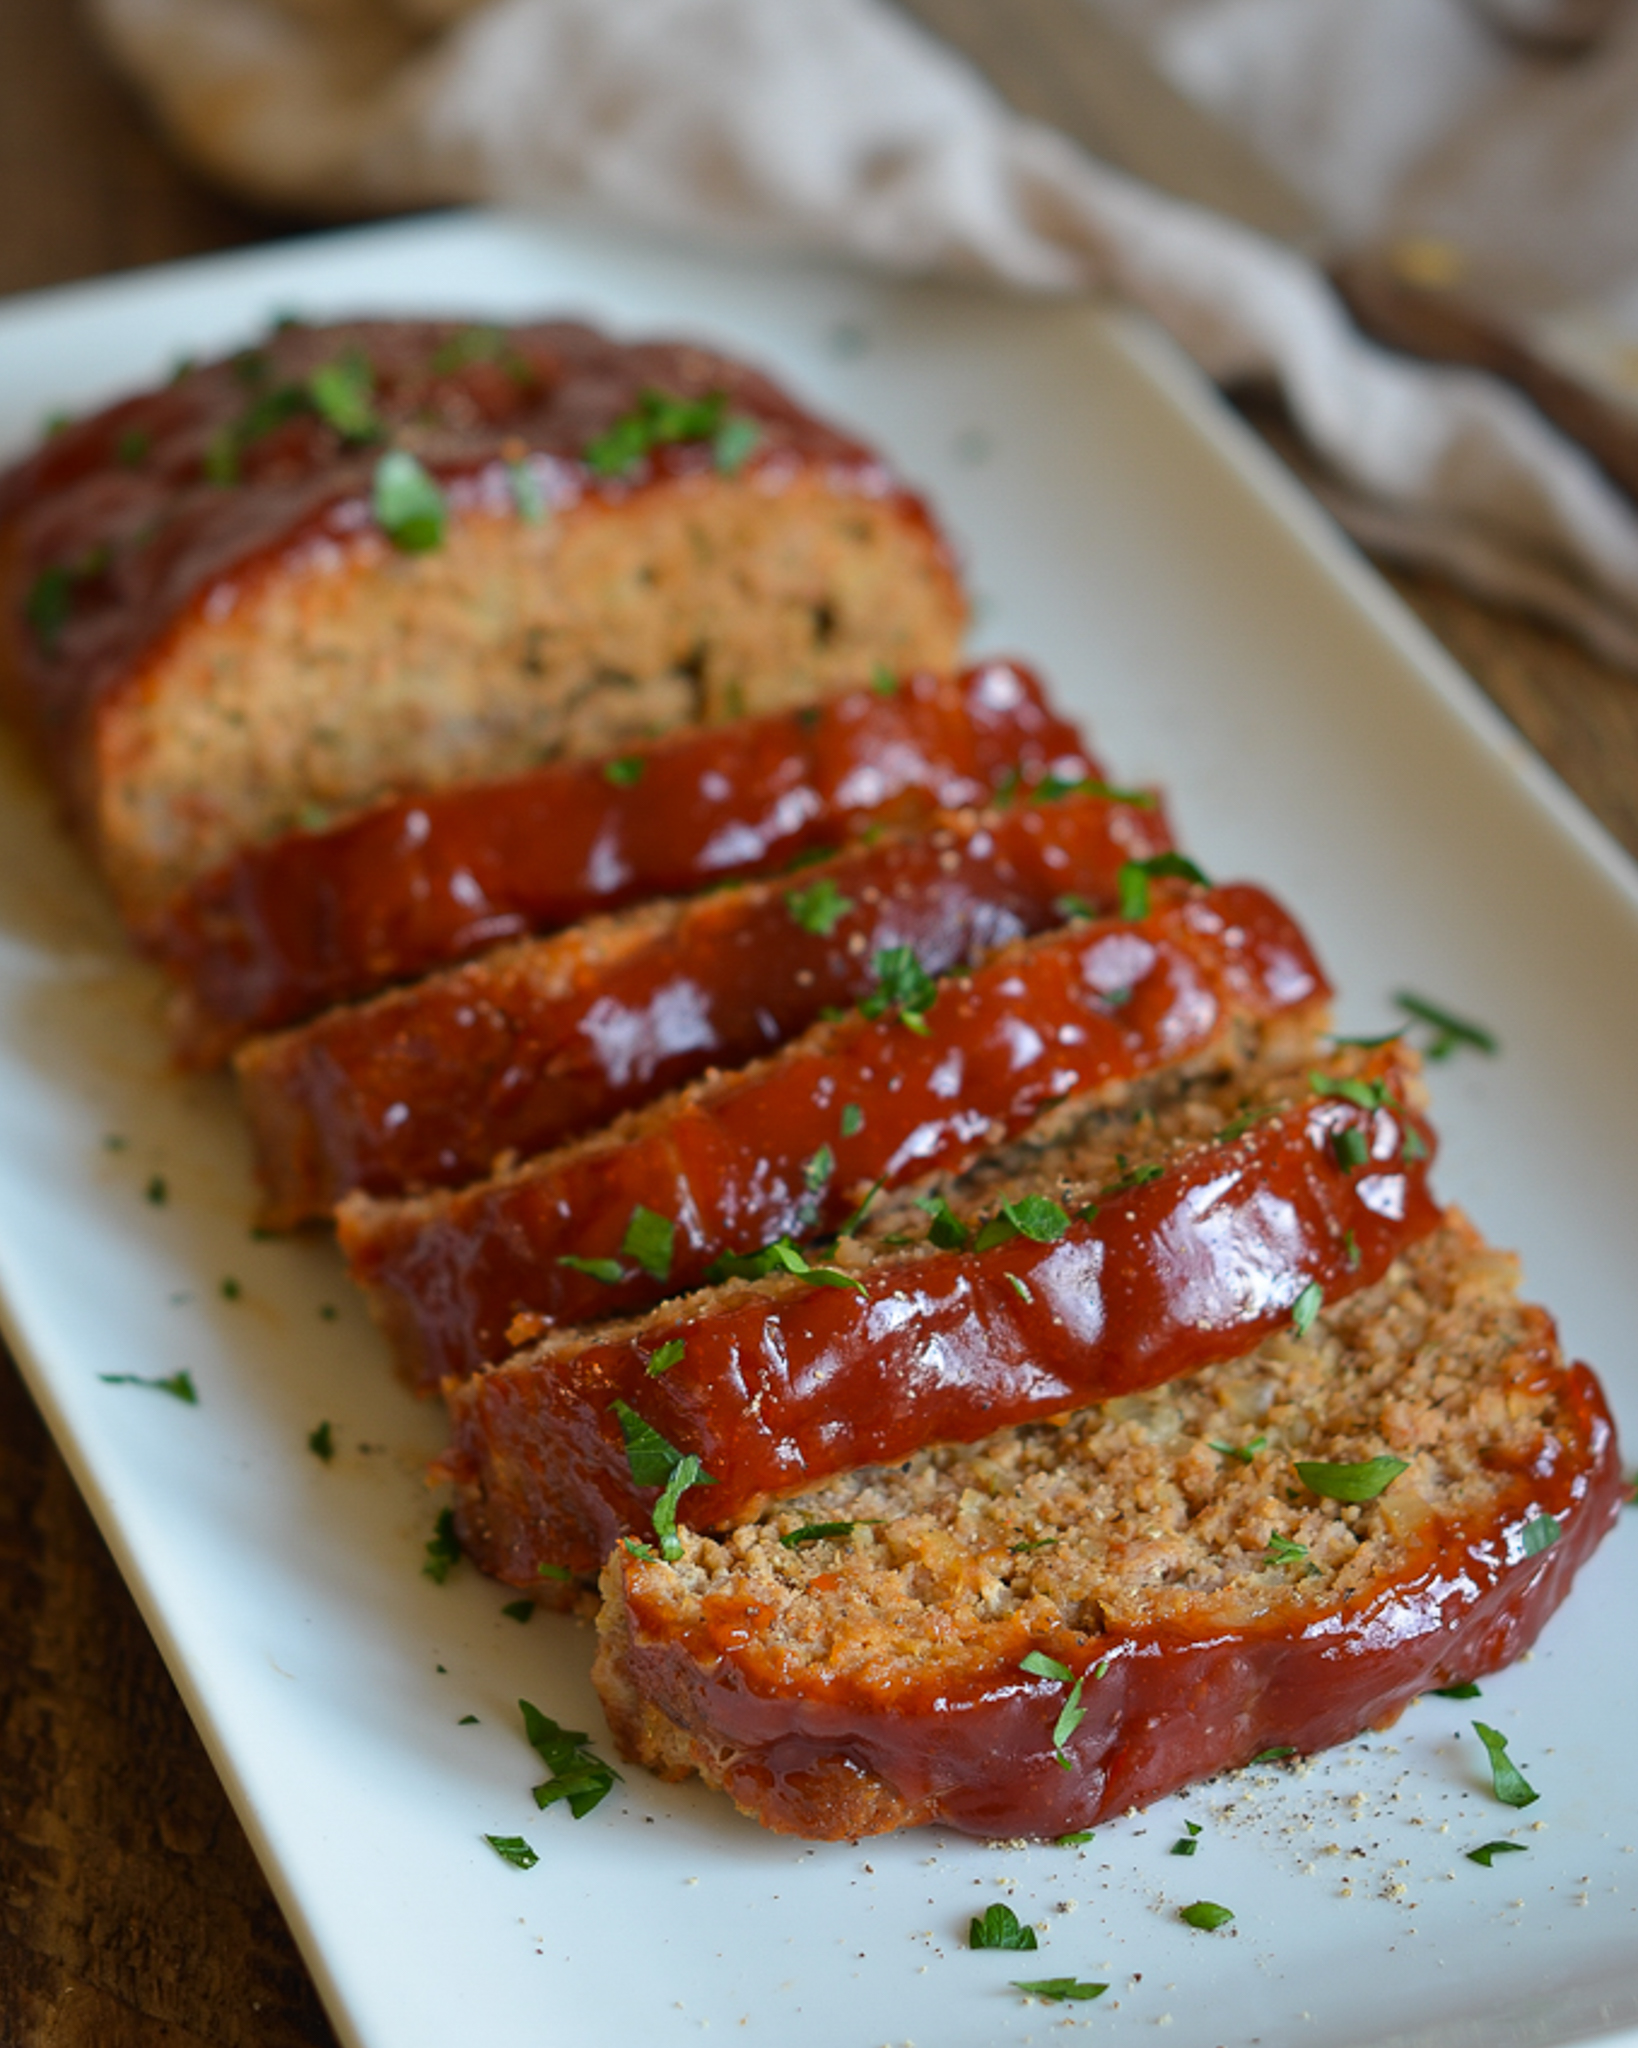 Best Turkey Meatloaf Recipe - How to Make Turkey Meatloaf